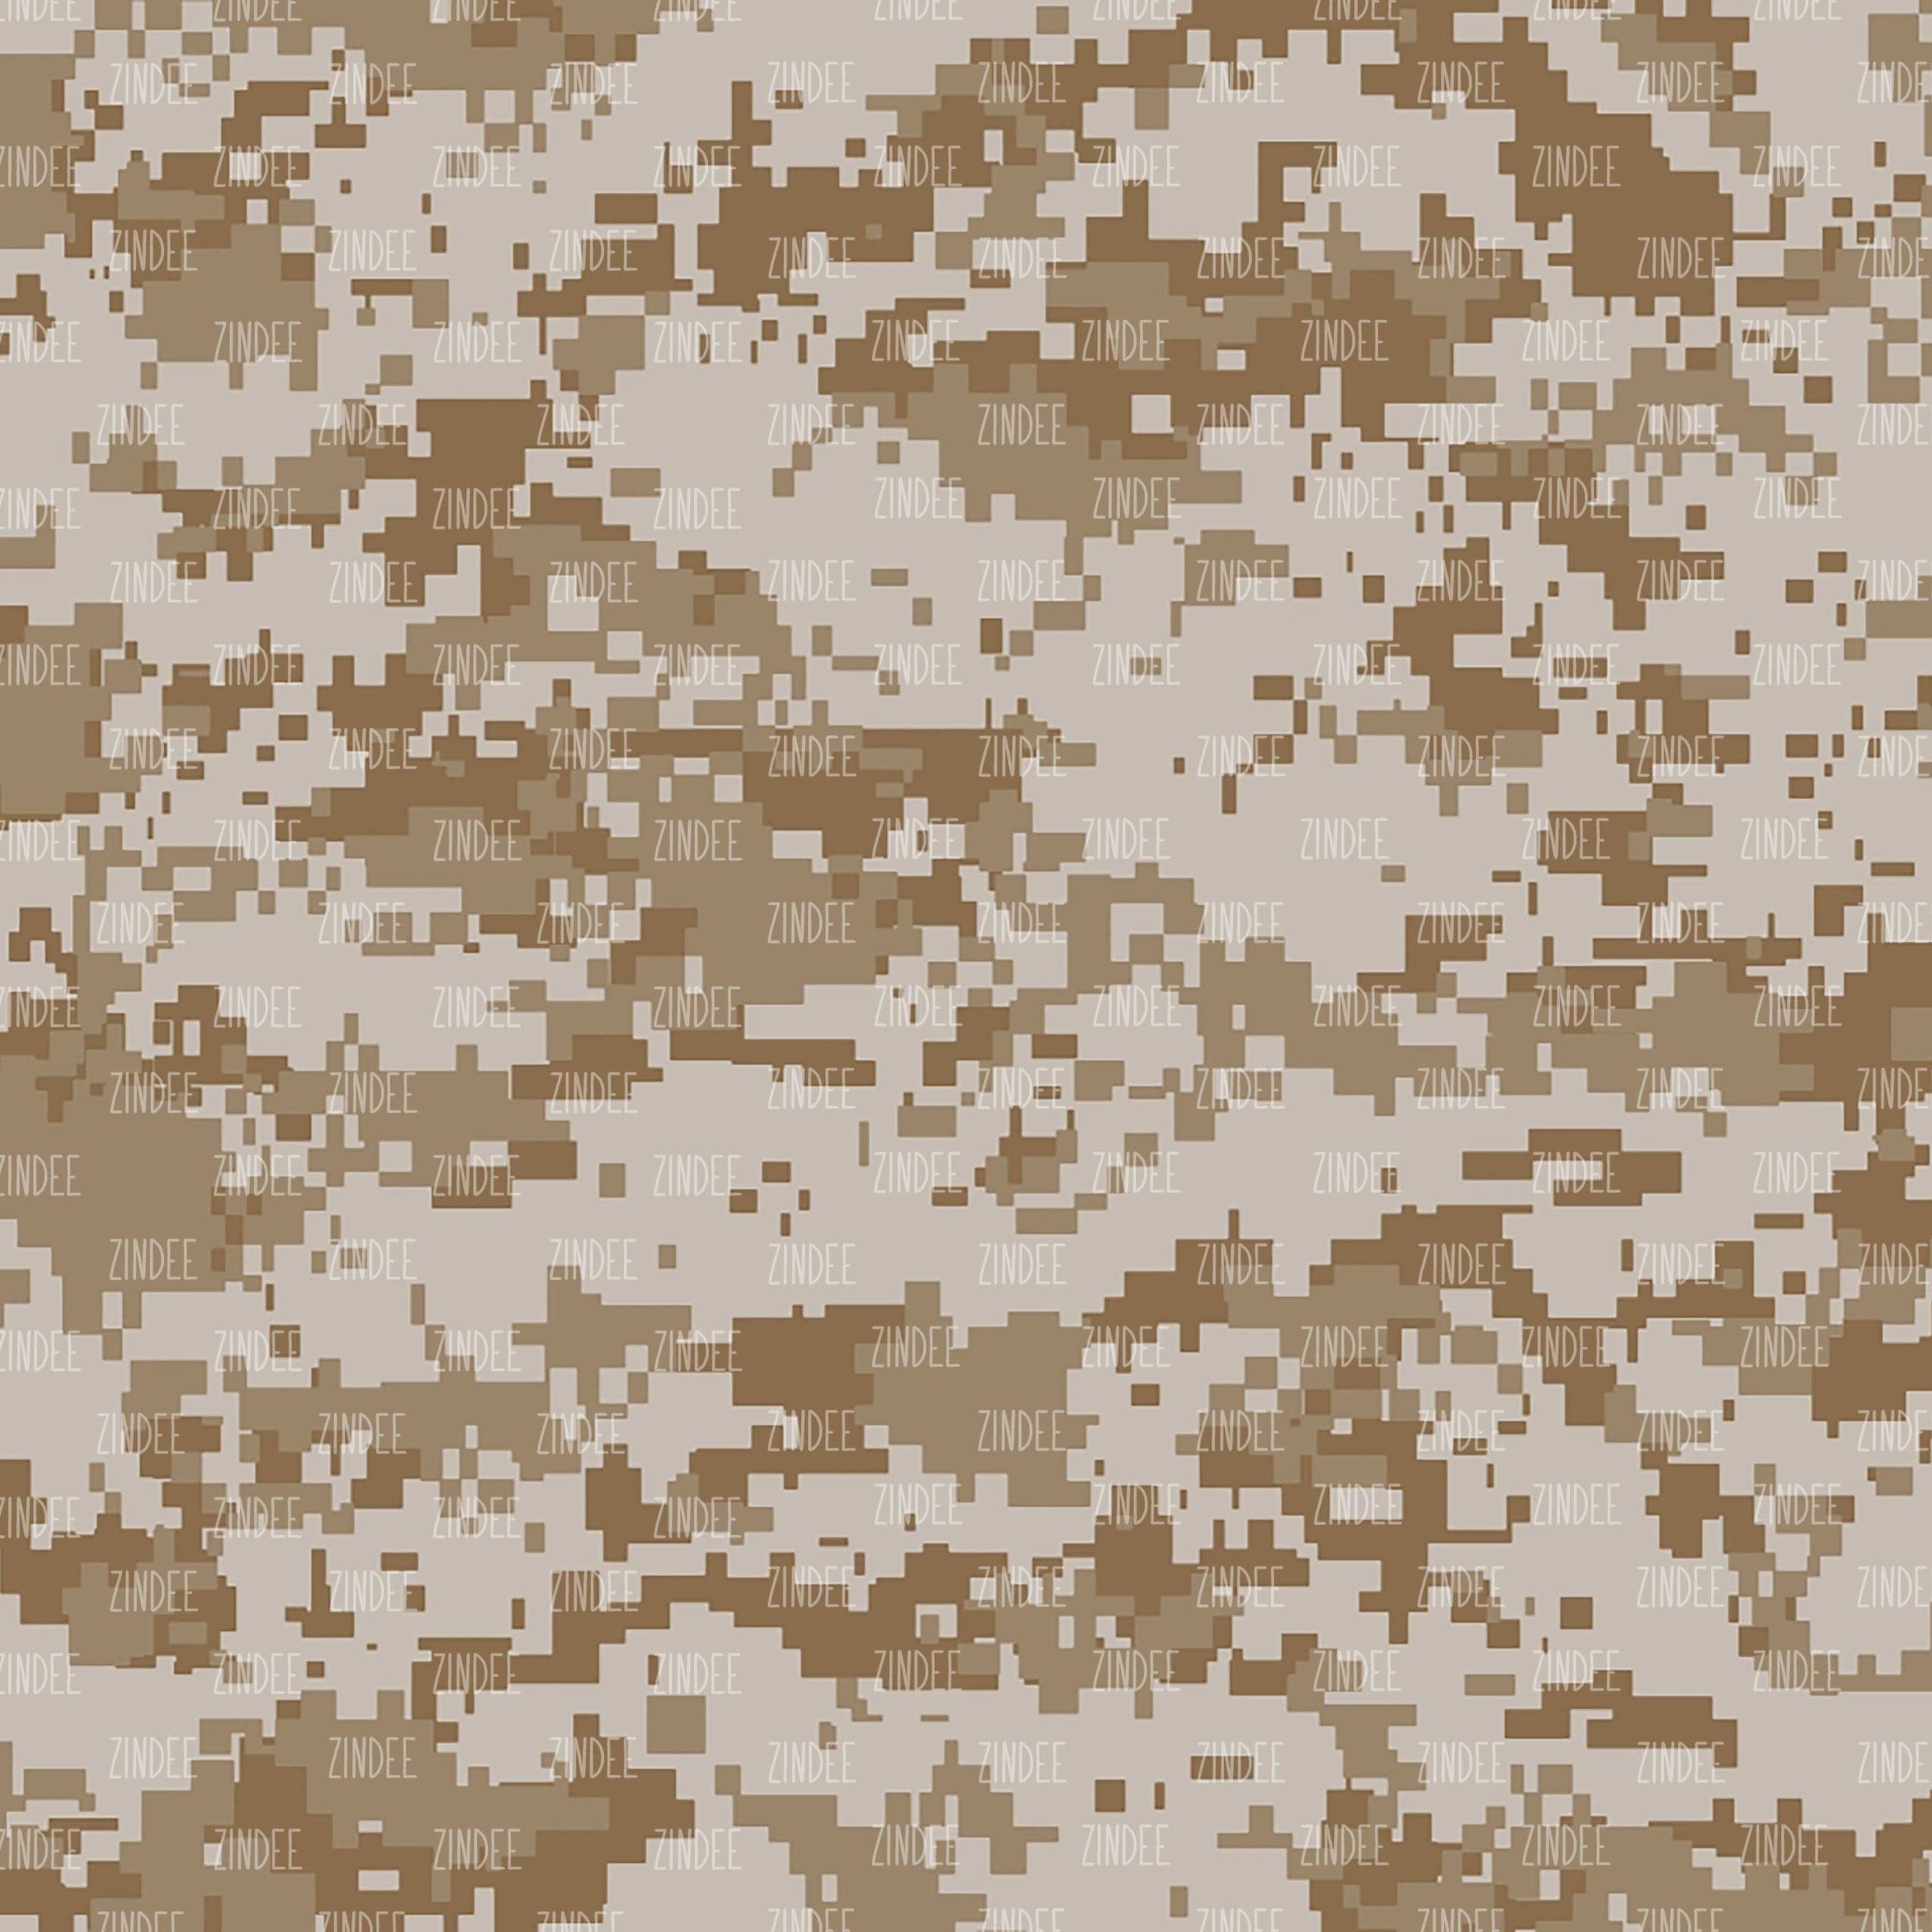 4 Black Camouflage Texture Tile (PNG Transparent)